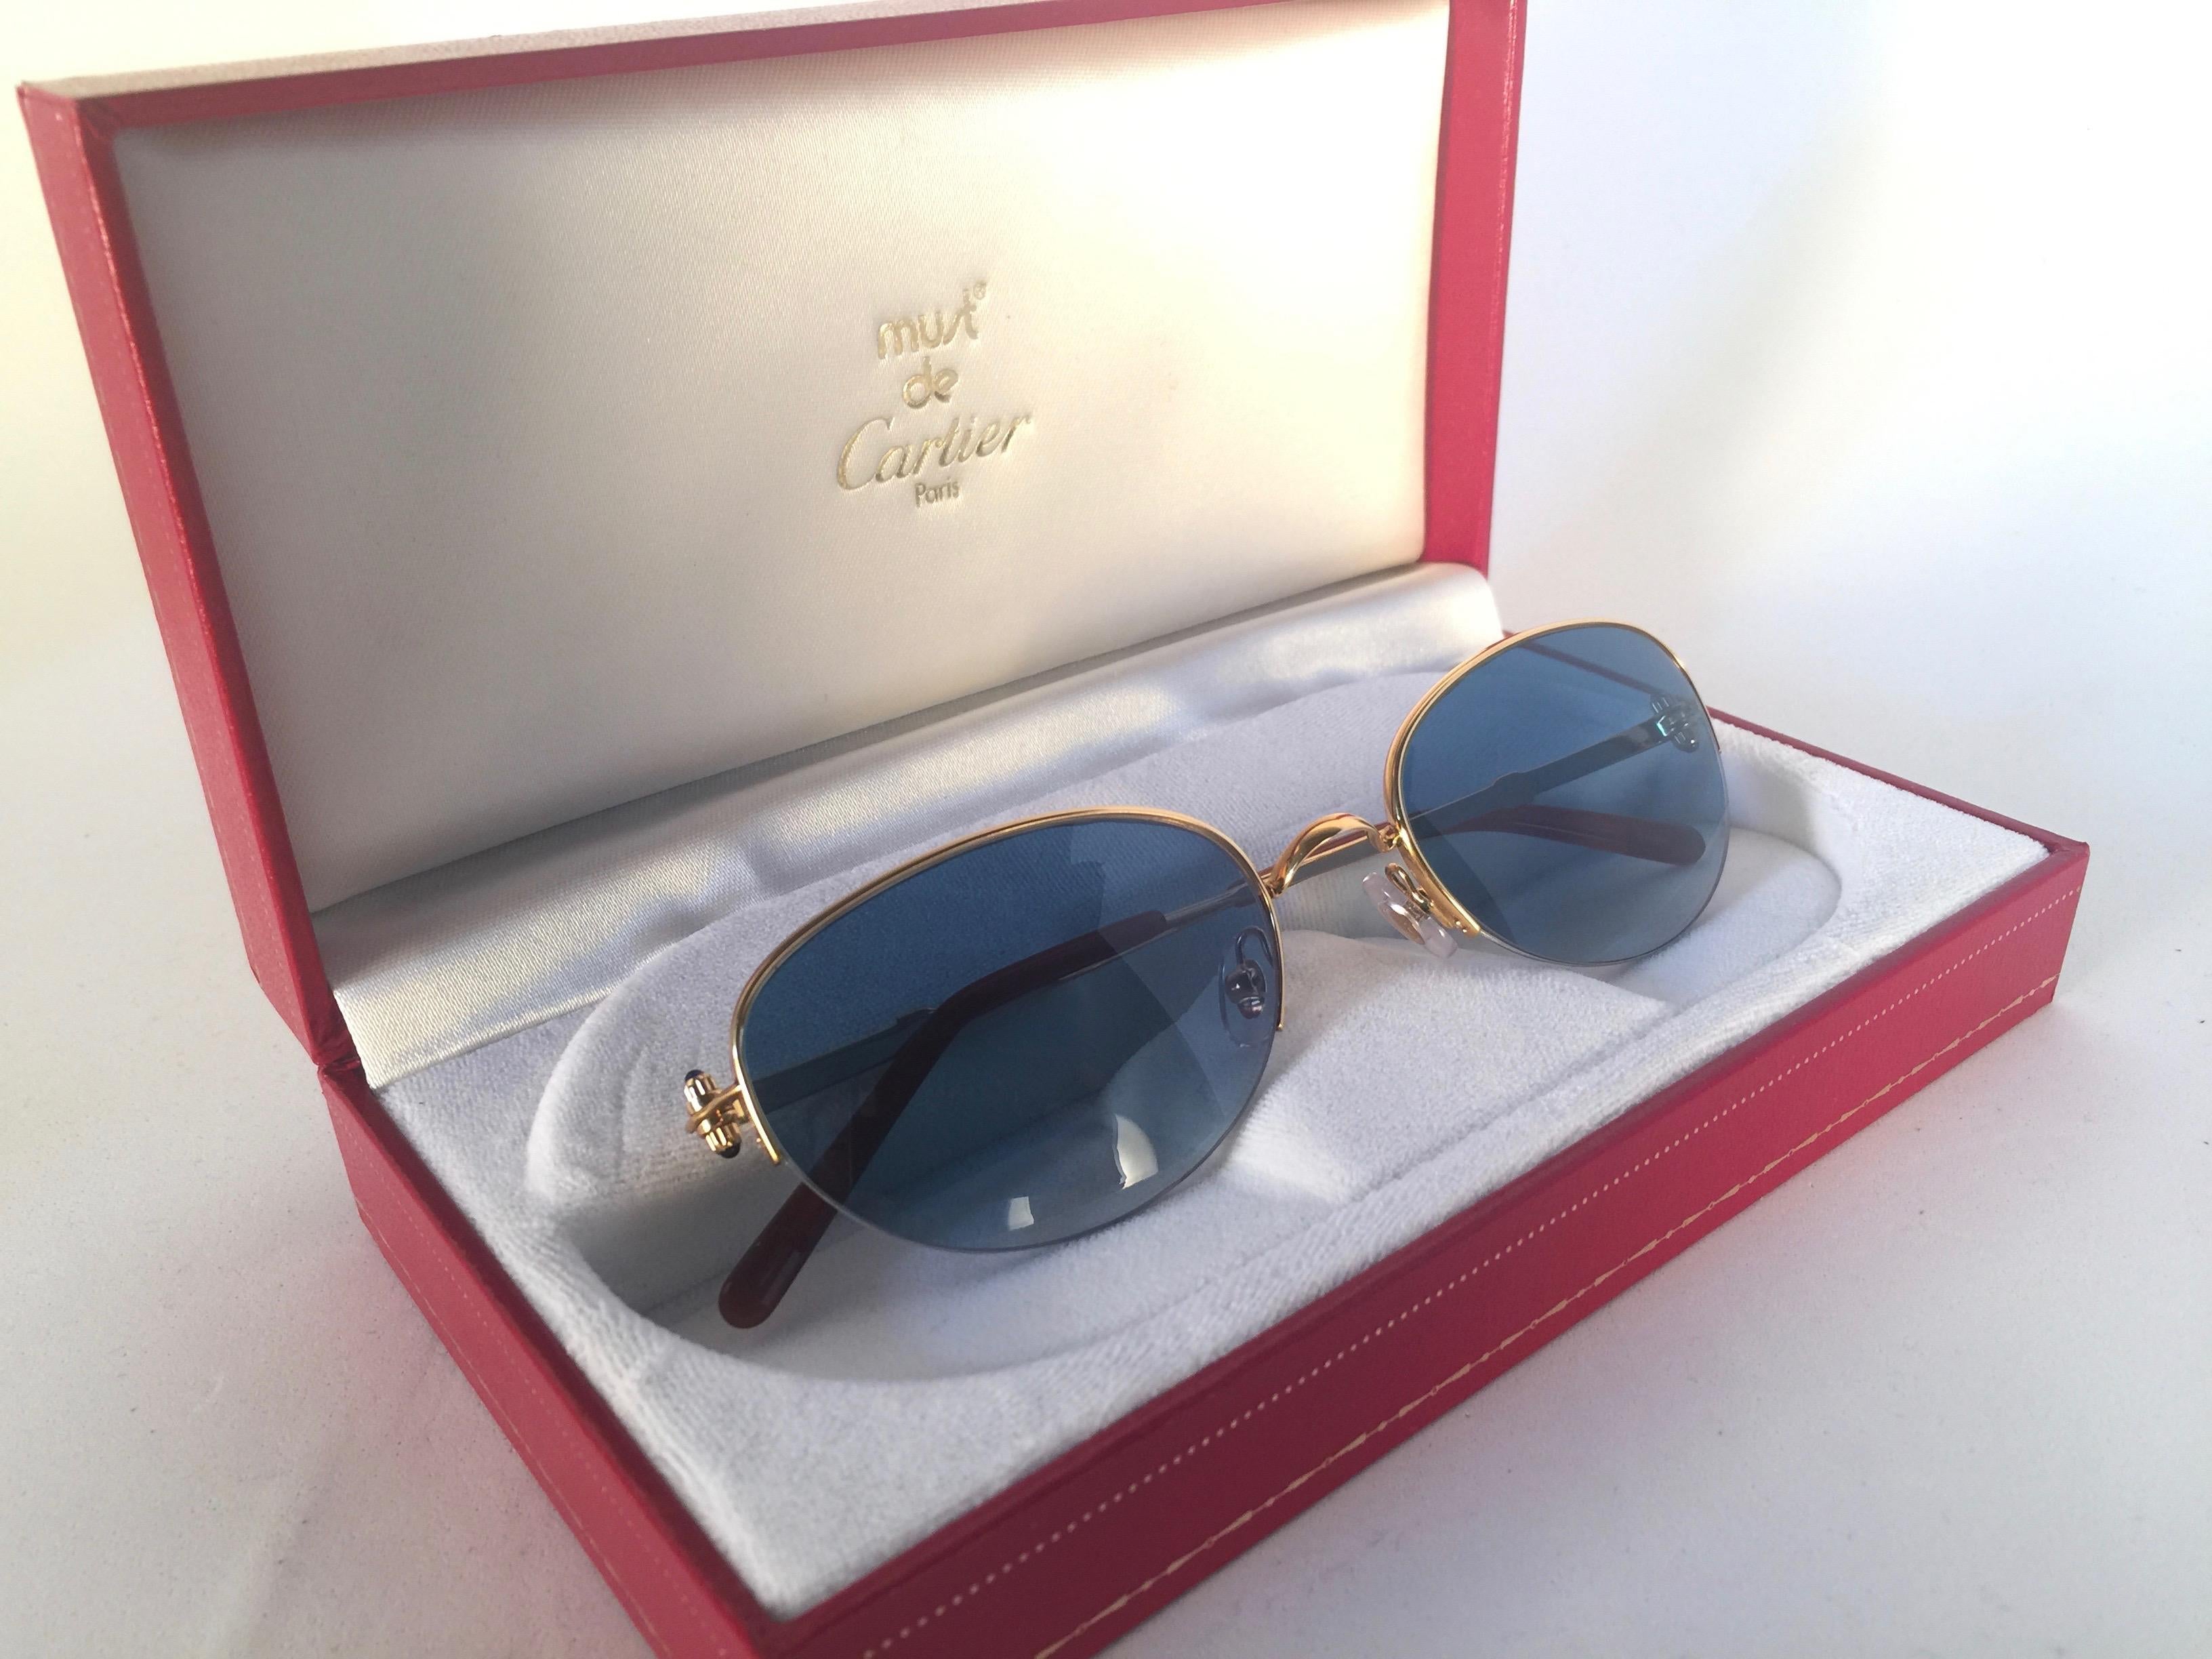 New 1983 Cartier Cabochon Sonnenbrille mit blauen Verlaufsgläsern (UV-Schutz). Der Rahmen ist mit der Vorderseite und den Seiten in Gelb- und Weißgold. Alle Markenzeichen. Cartier-Goldzeichen auf den Ohrpolstern. Mit der Fassung aus 18 Karat Gold